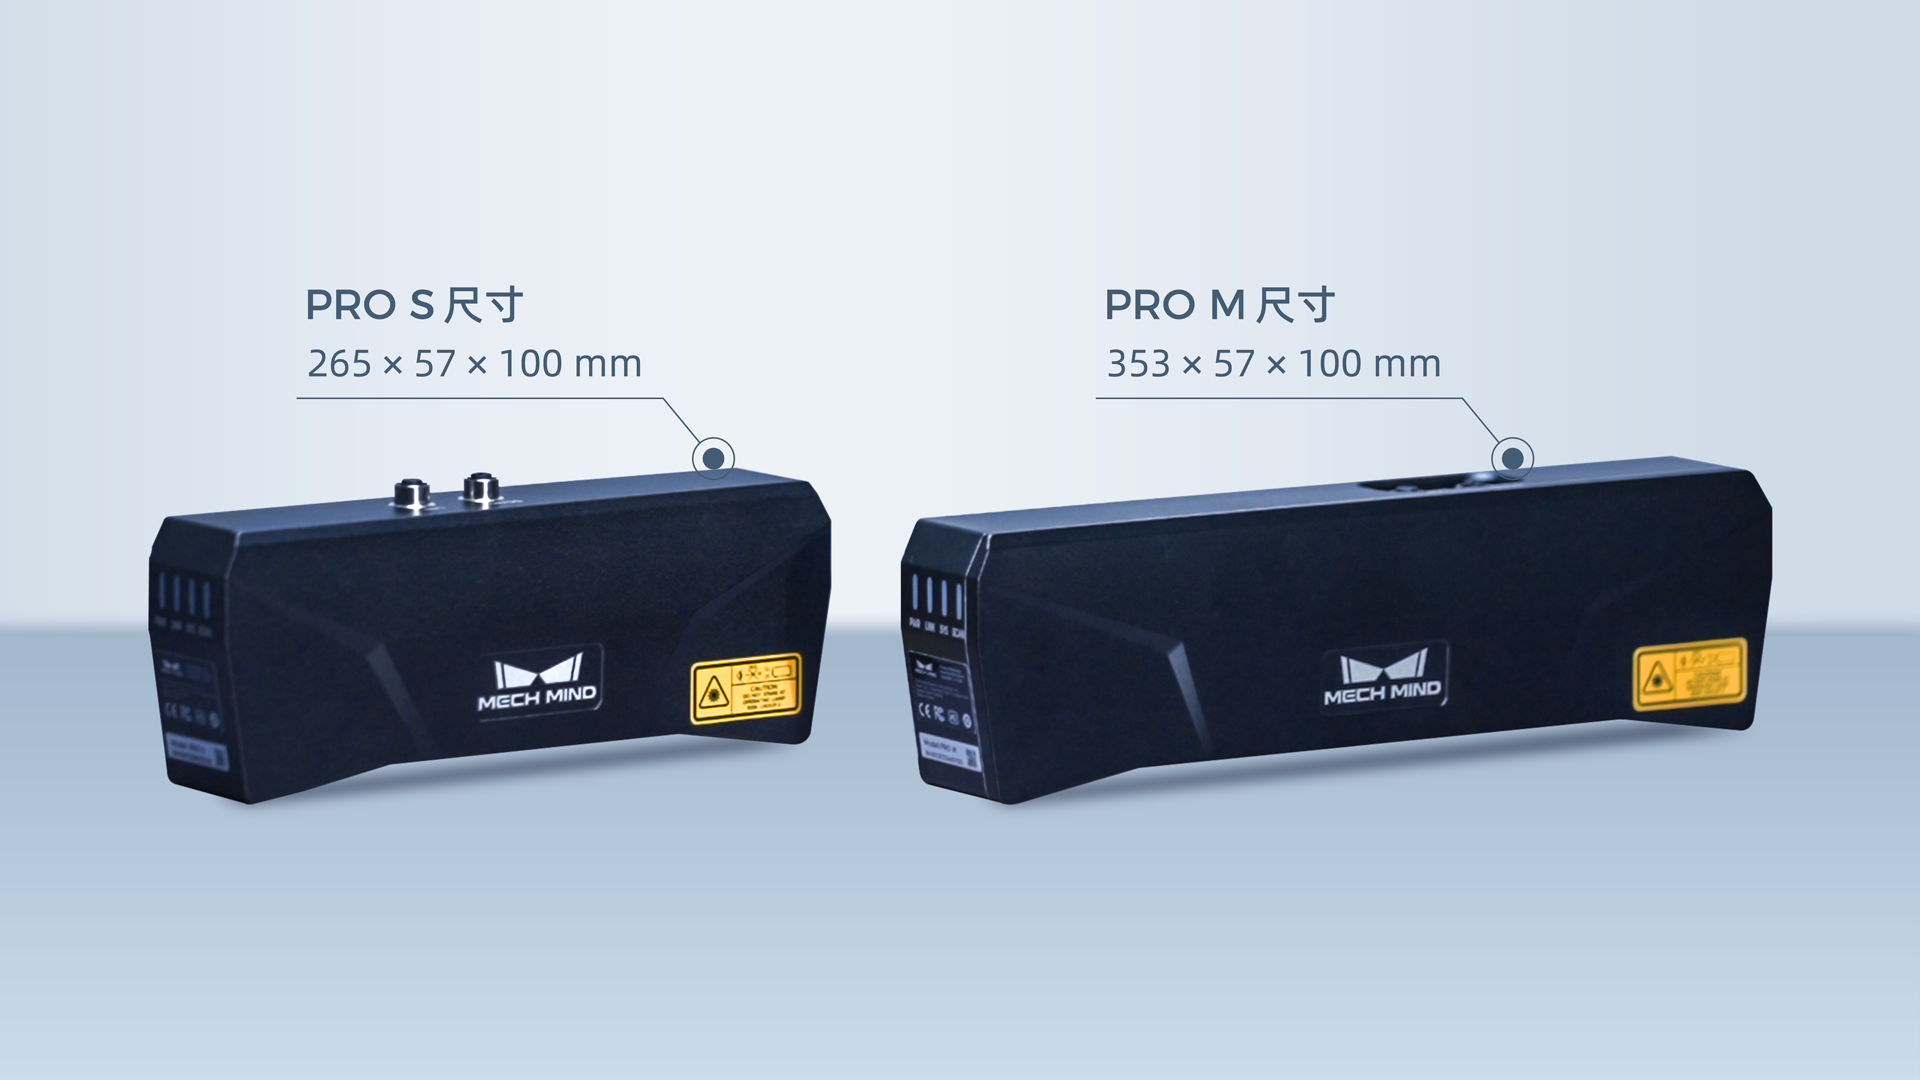 高精度结构光工业3D相机Mech-Eye PRO全面升级：可选蓝光/白光版本，适合中距离应用